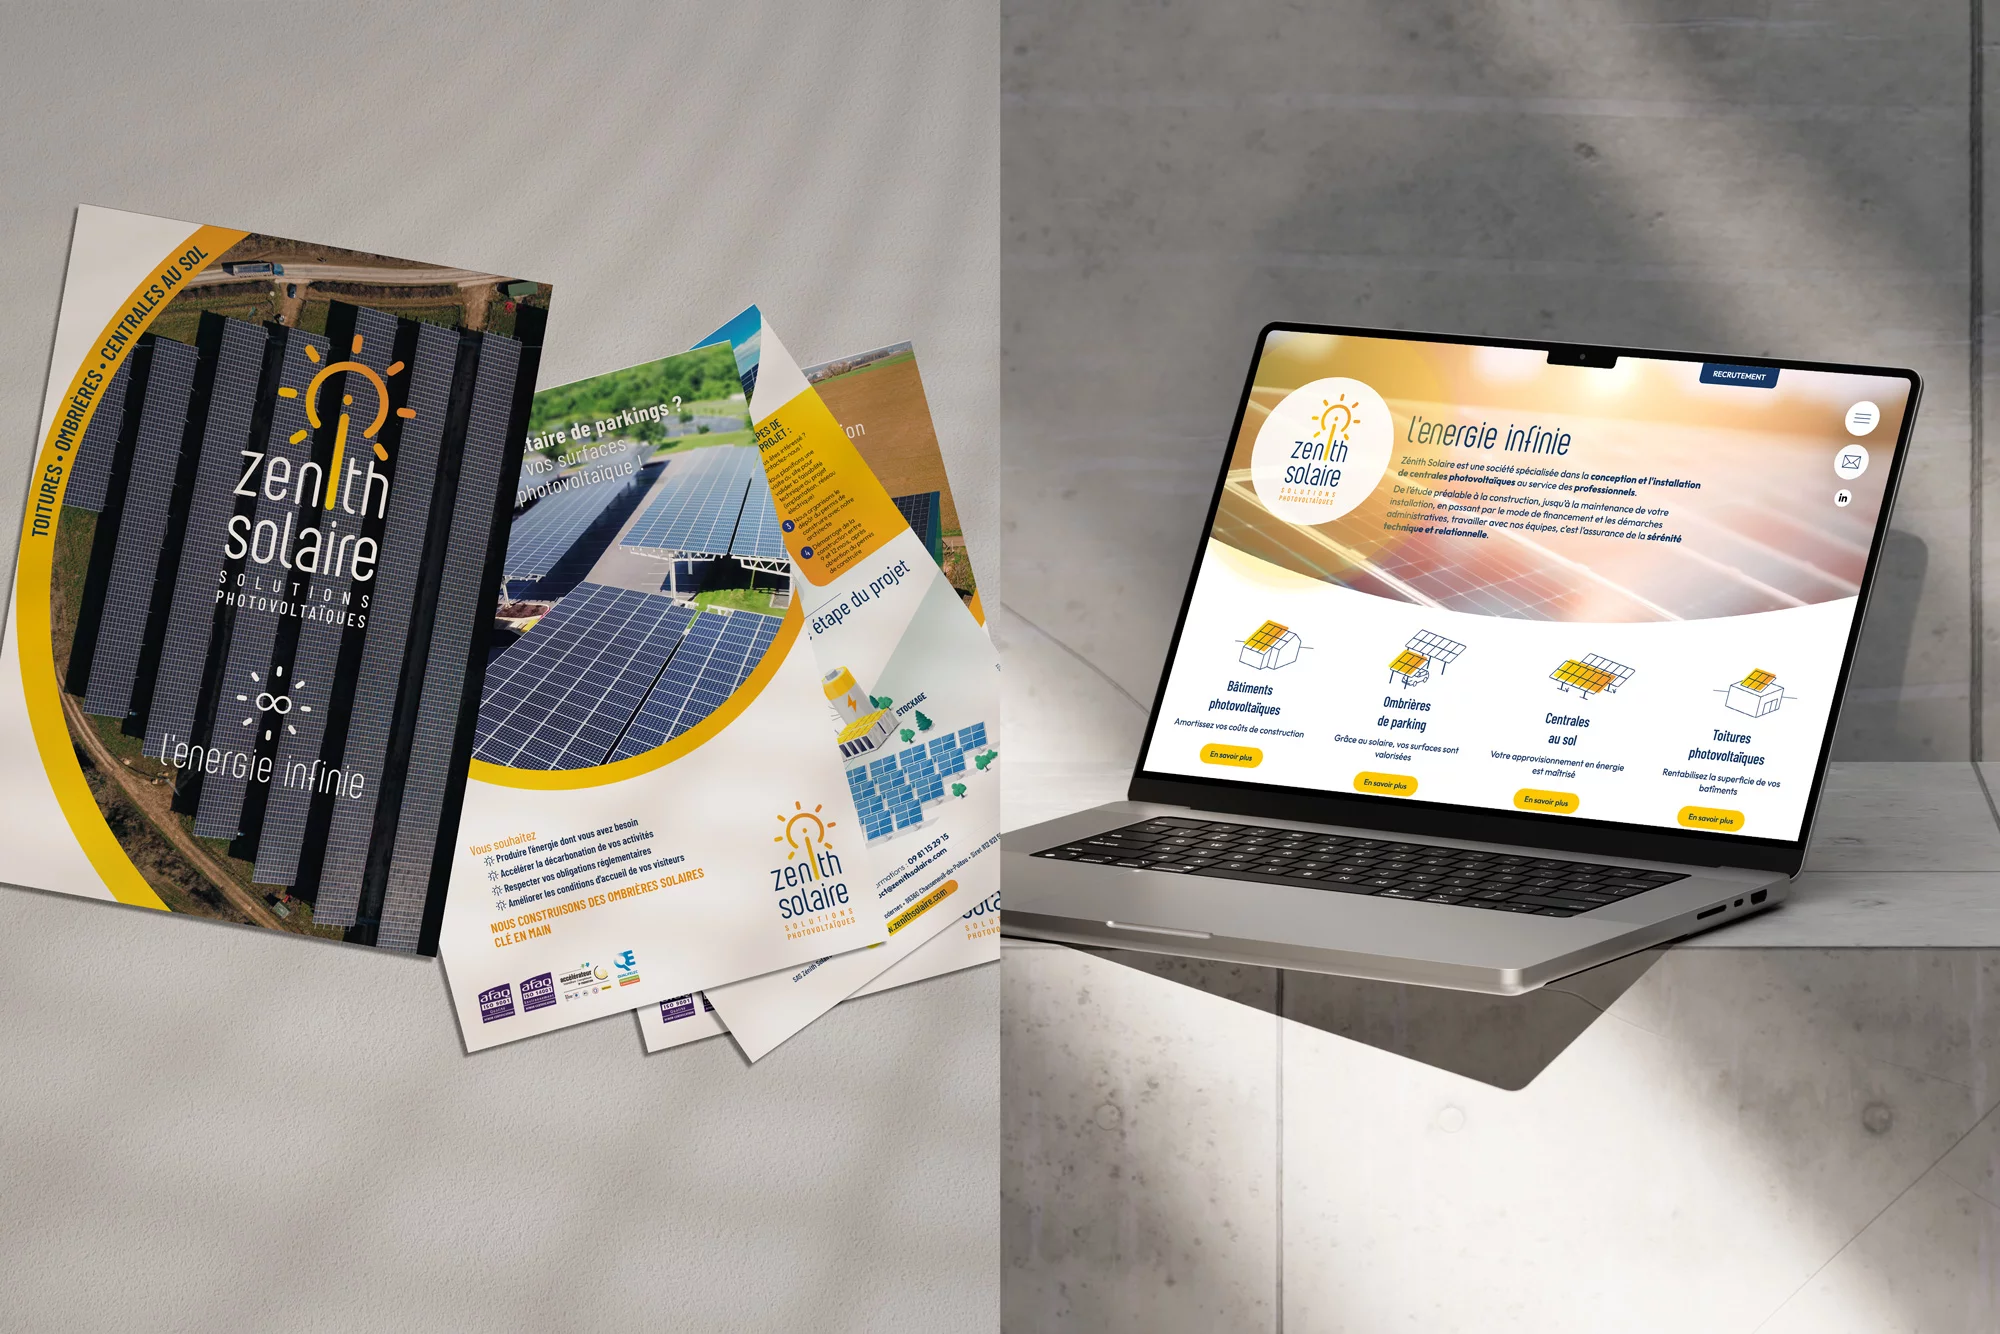 Zenith solaire site Internet brochure